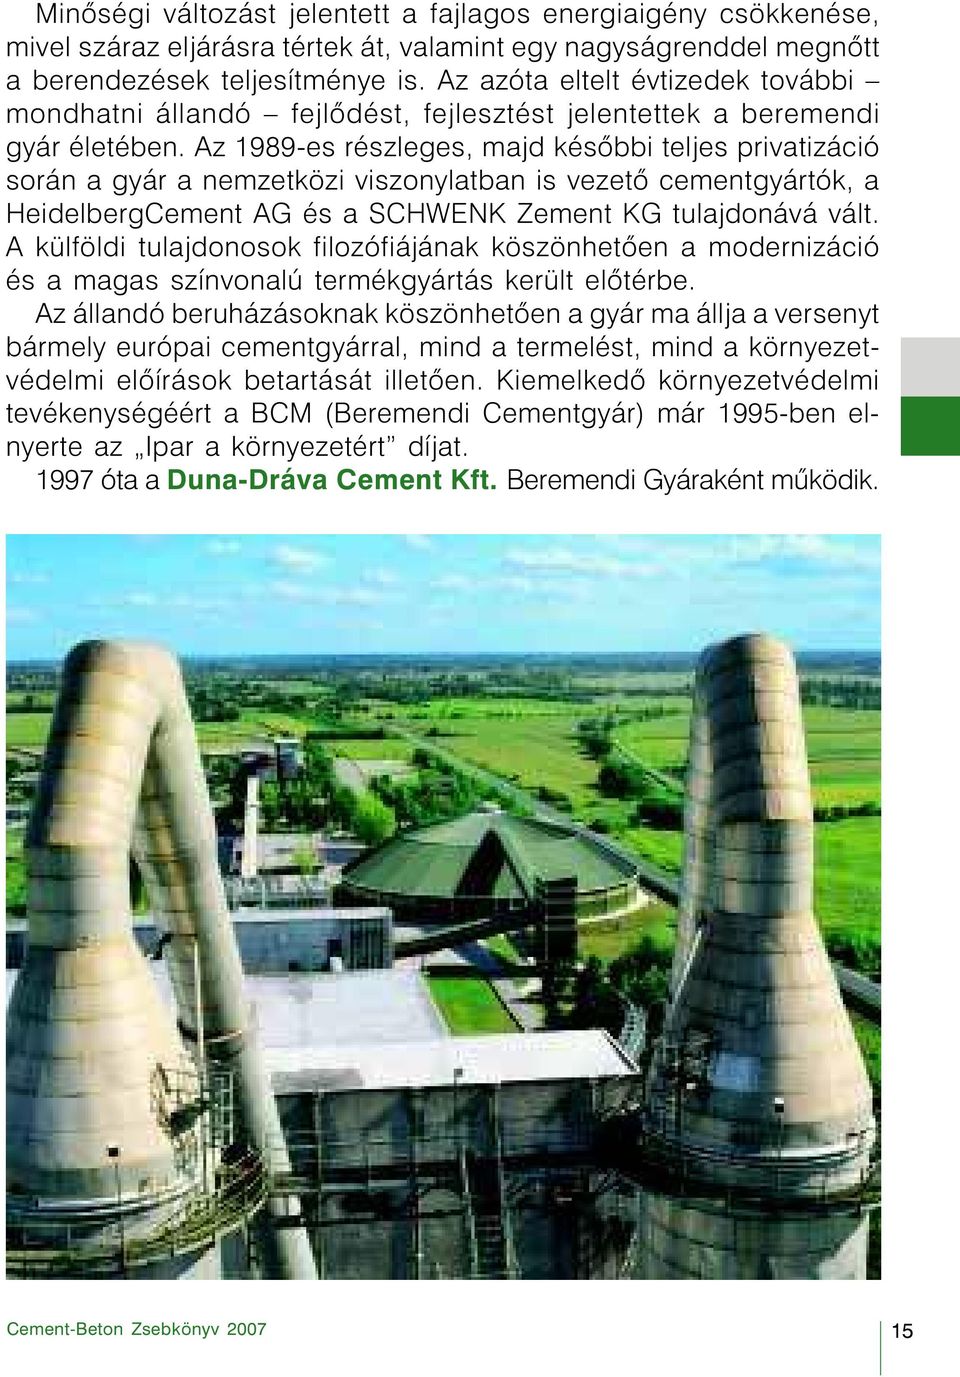 Az 1989-es részleges, majd késõbbi teljes privatizáció során a gyár a nemzetközi viszonylatban is vezetõ cementgyártók, a HeidelbergCement AG és a SCHWENK Zement KG tulajdonává vált.